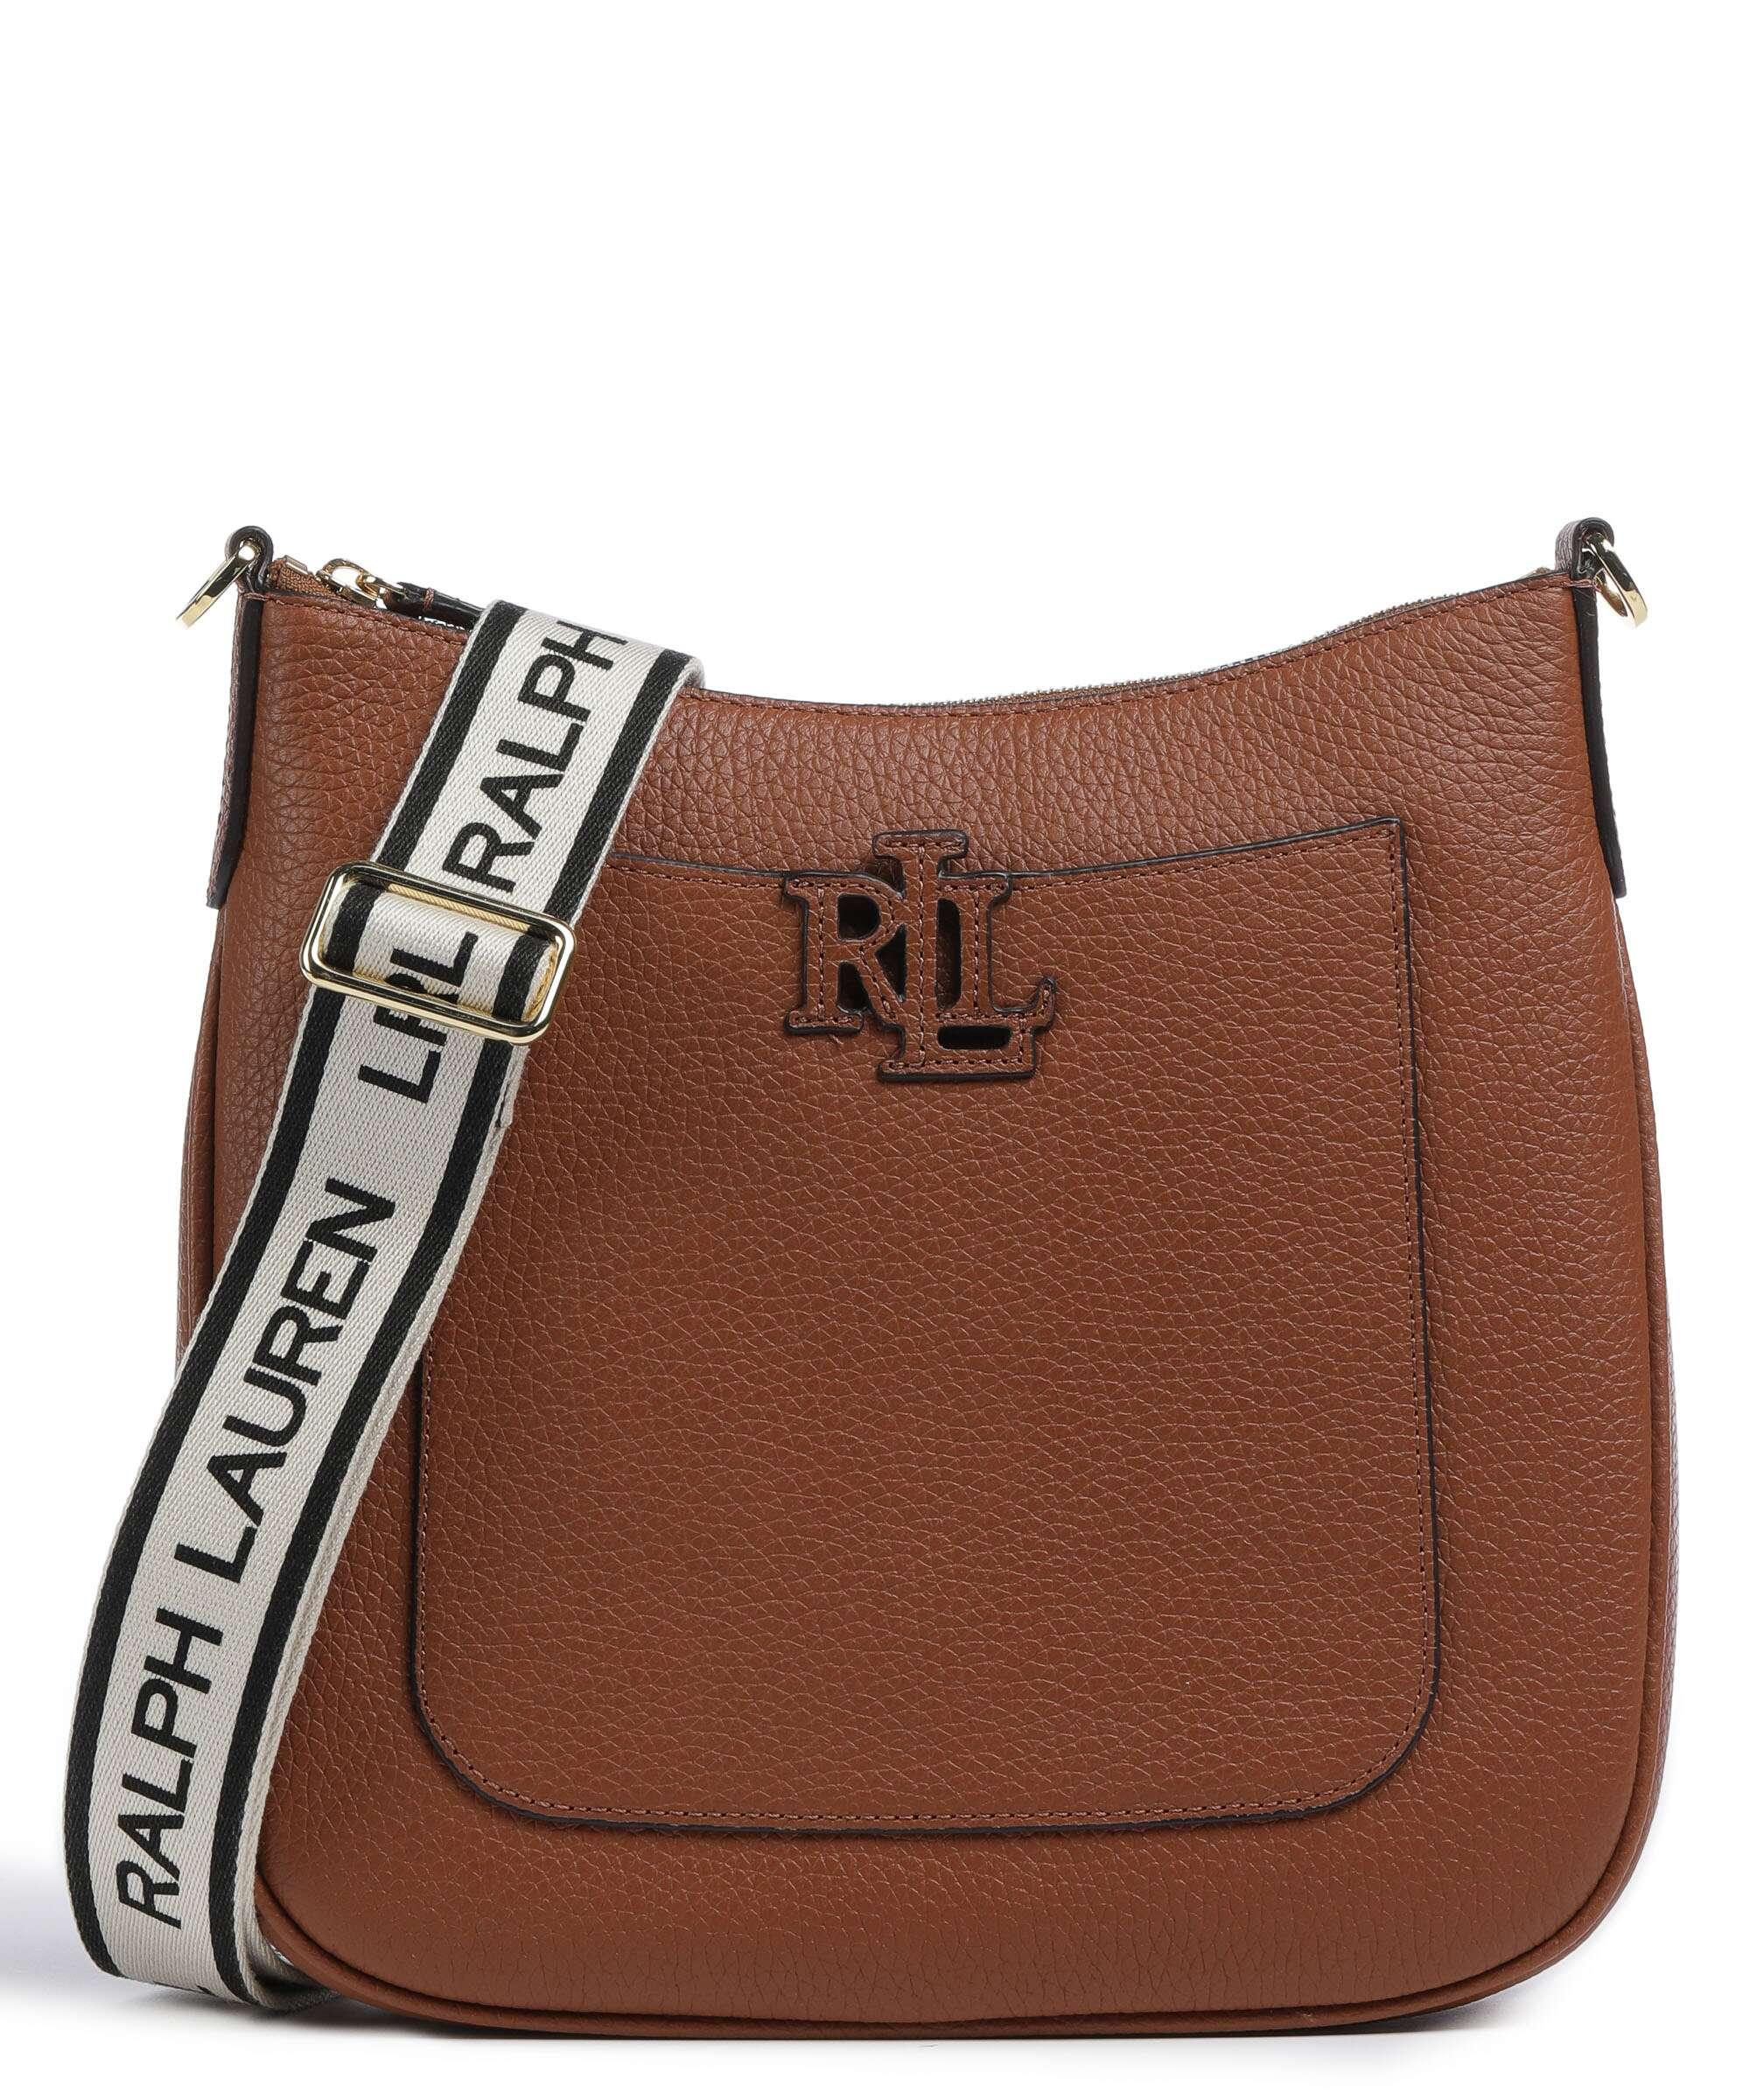 Authentic Ralph Lauren Handbags on sale Archives - Luxe Purses